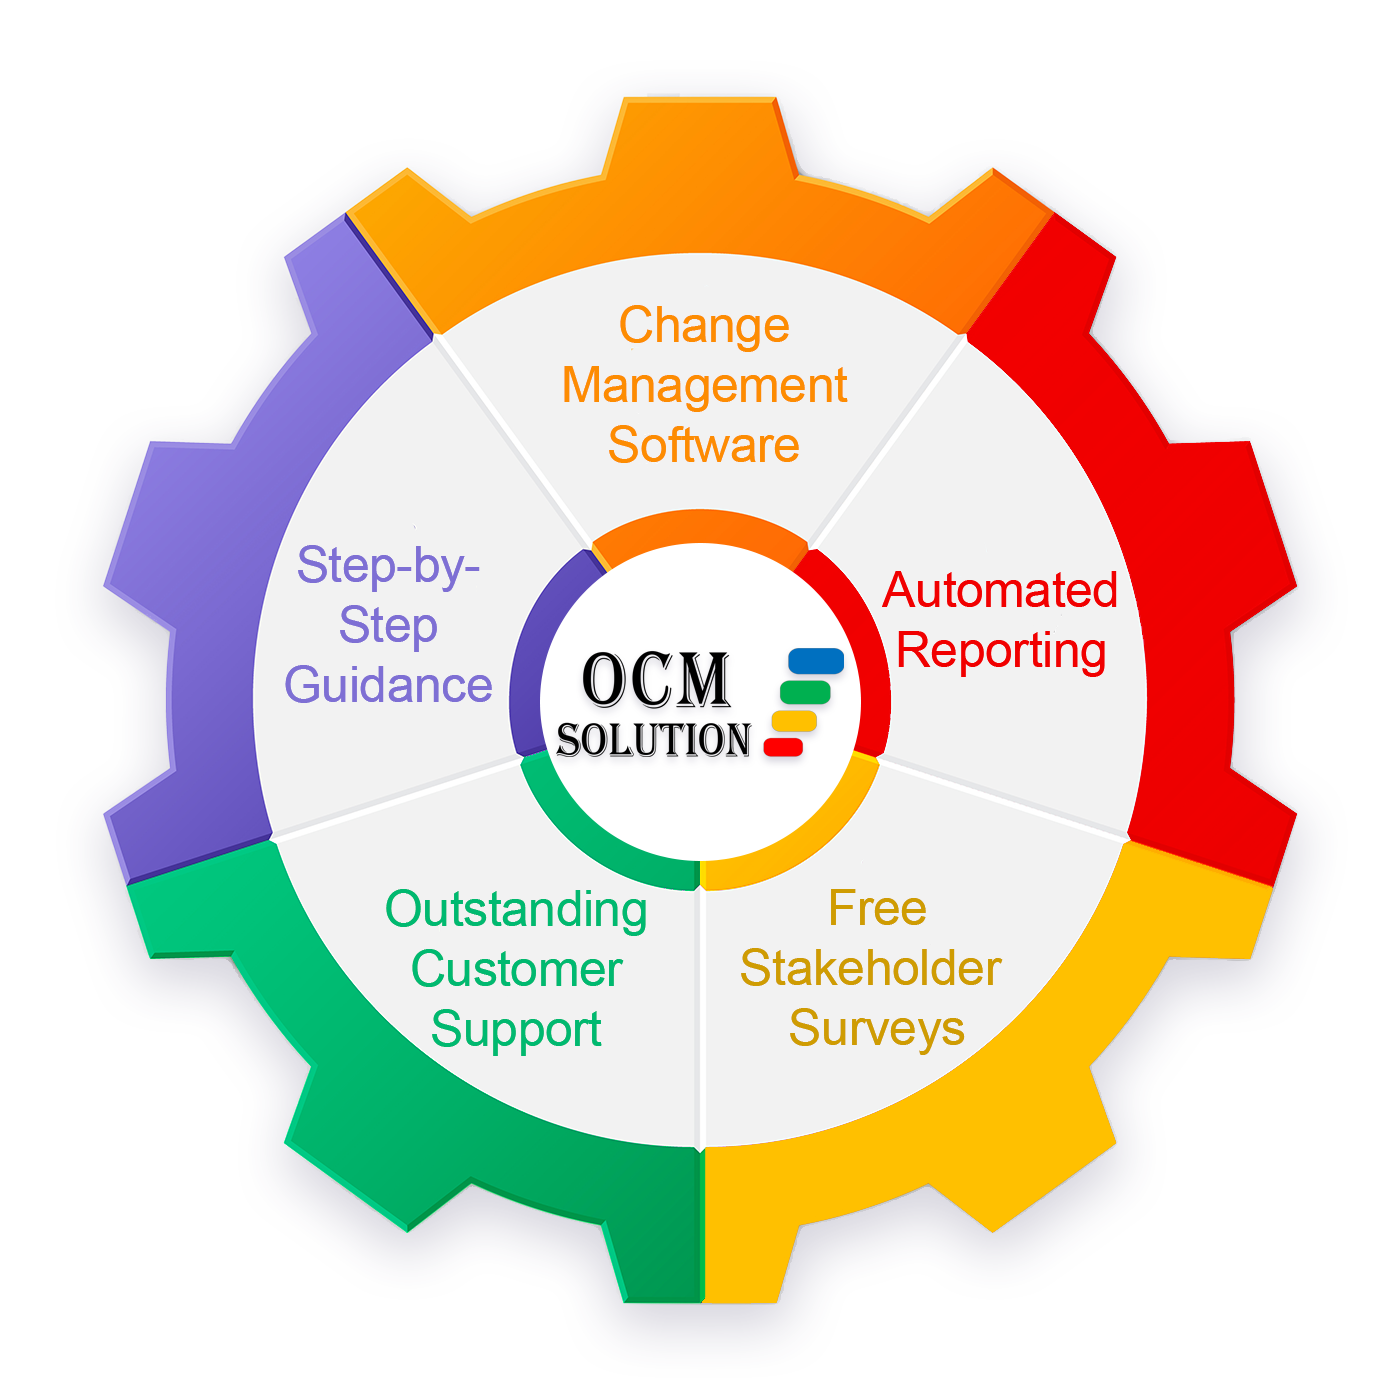 OCM Solution Change Management Software